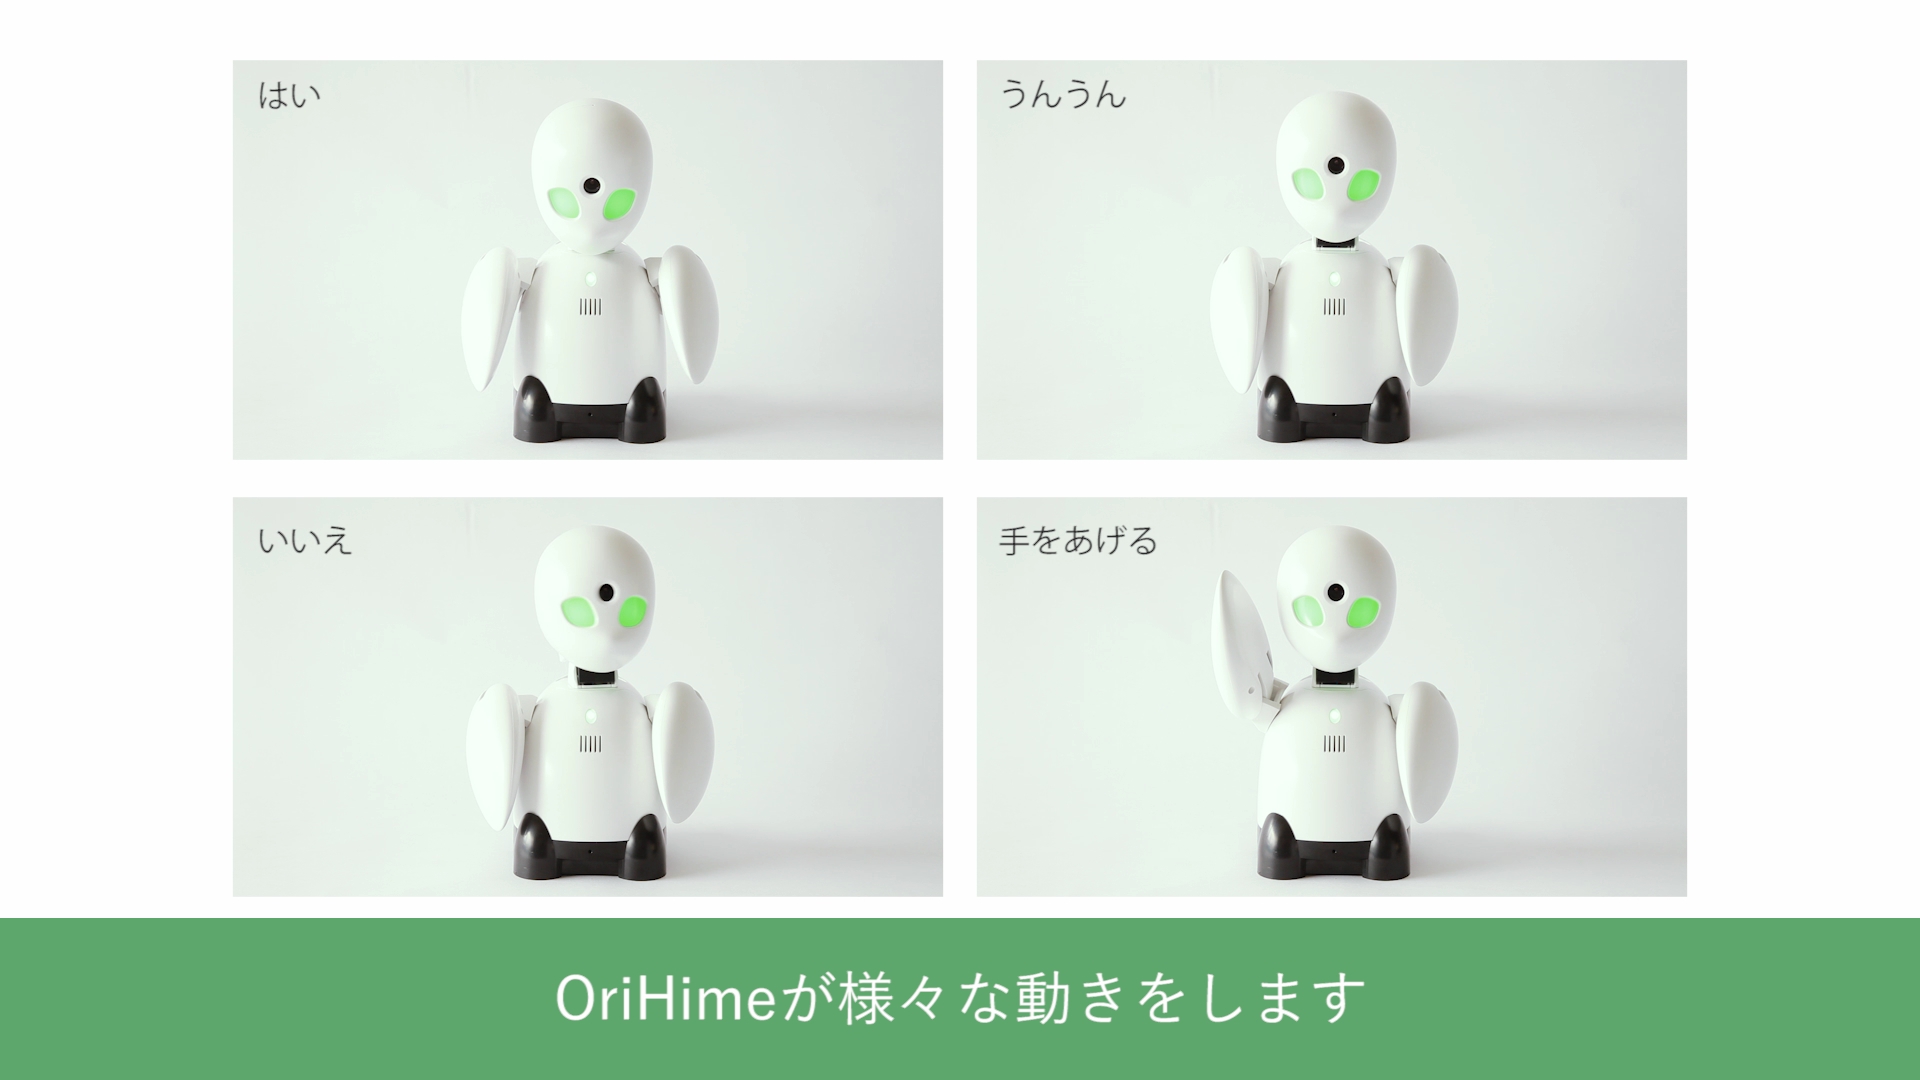 オリィ研究所、分身ロボット「OriHime」新バージョンをリリース | ICT